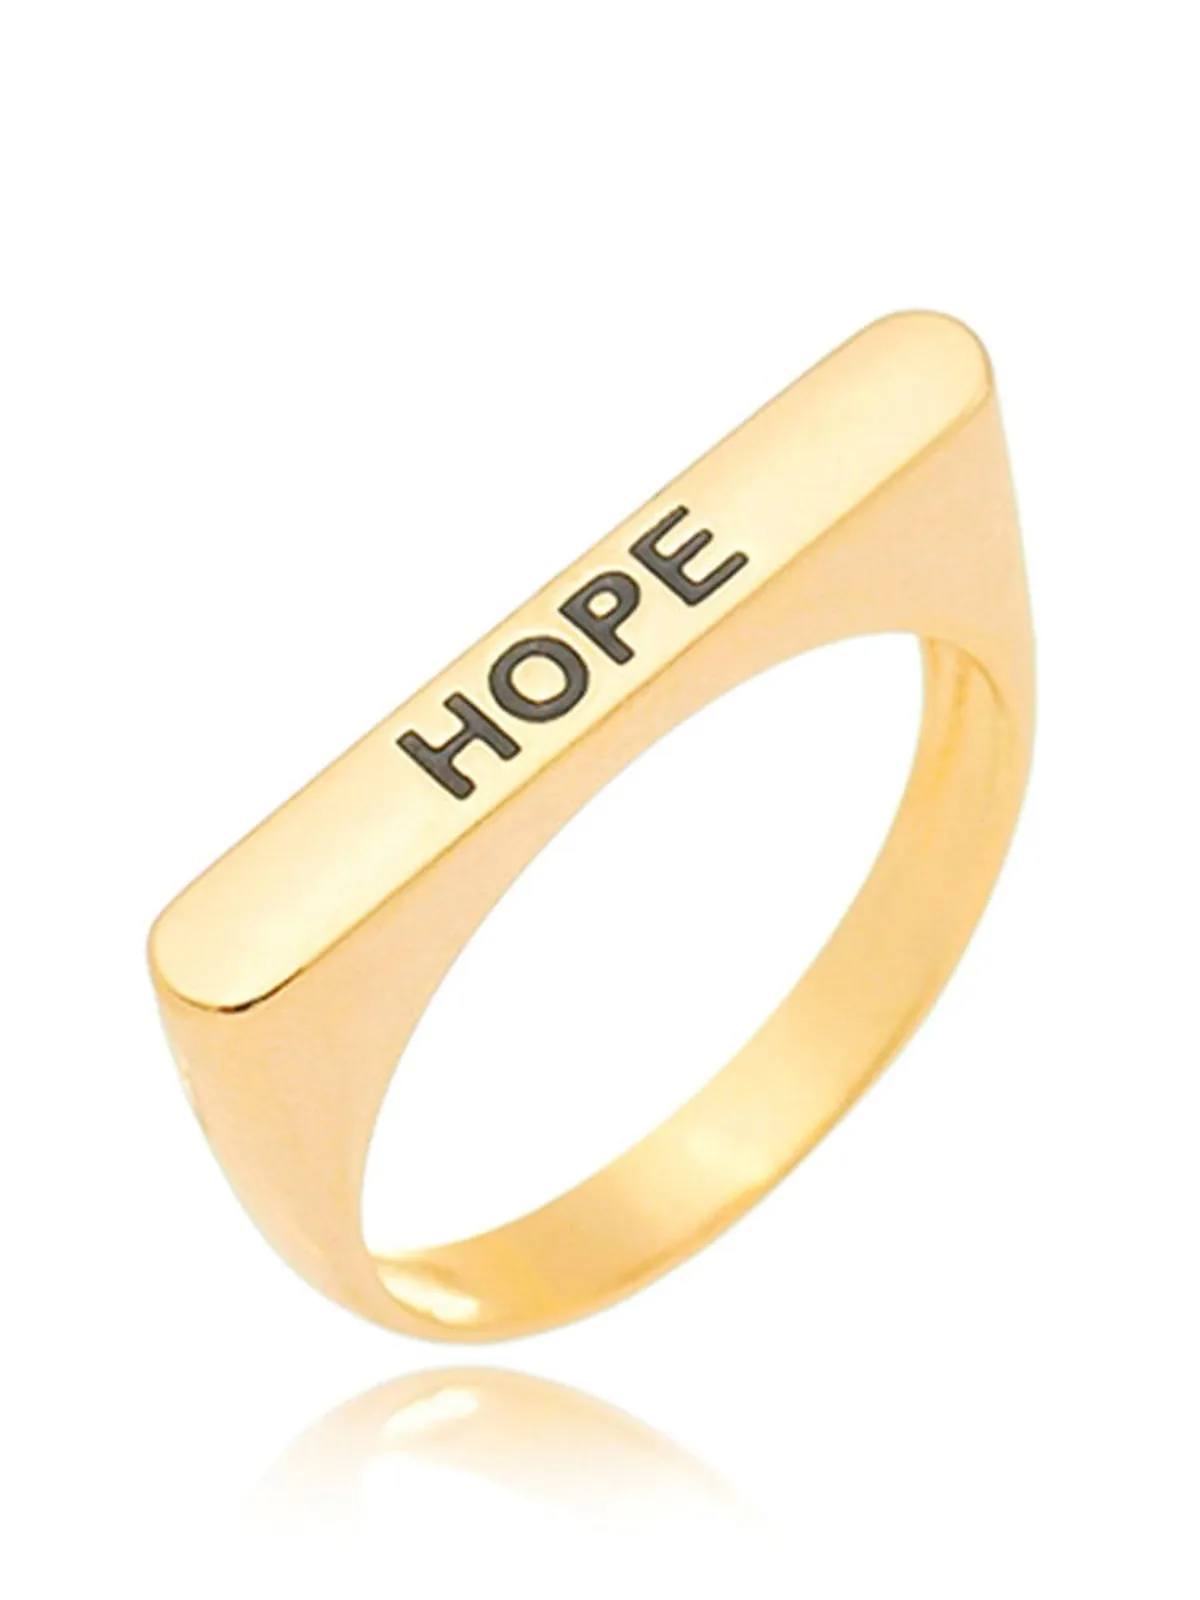 Anel com Chapa Lisa “Hope” folheado em ouro 18k